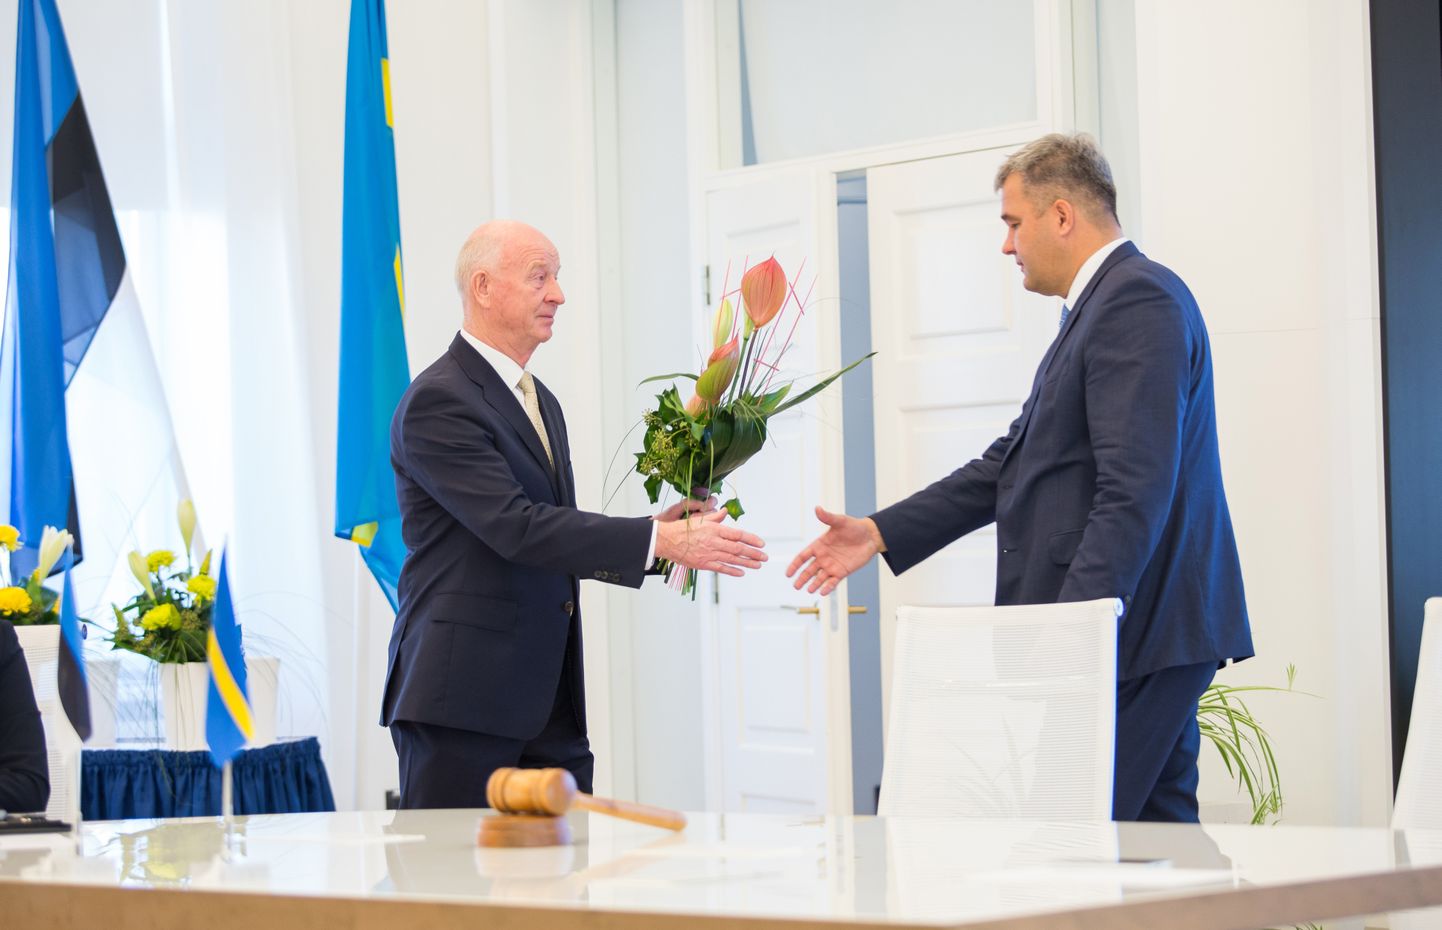 Linnavolikogu esimeest Mihkel Juhkamit (paremal) õnnitlev Toomas Varek otsustas vaadete erinevuste tõttu poliitikast lahkuda.